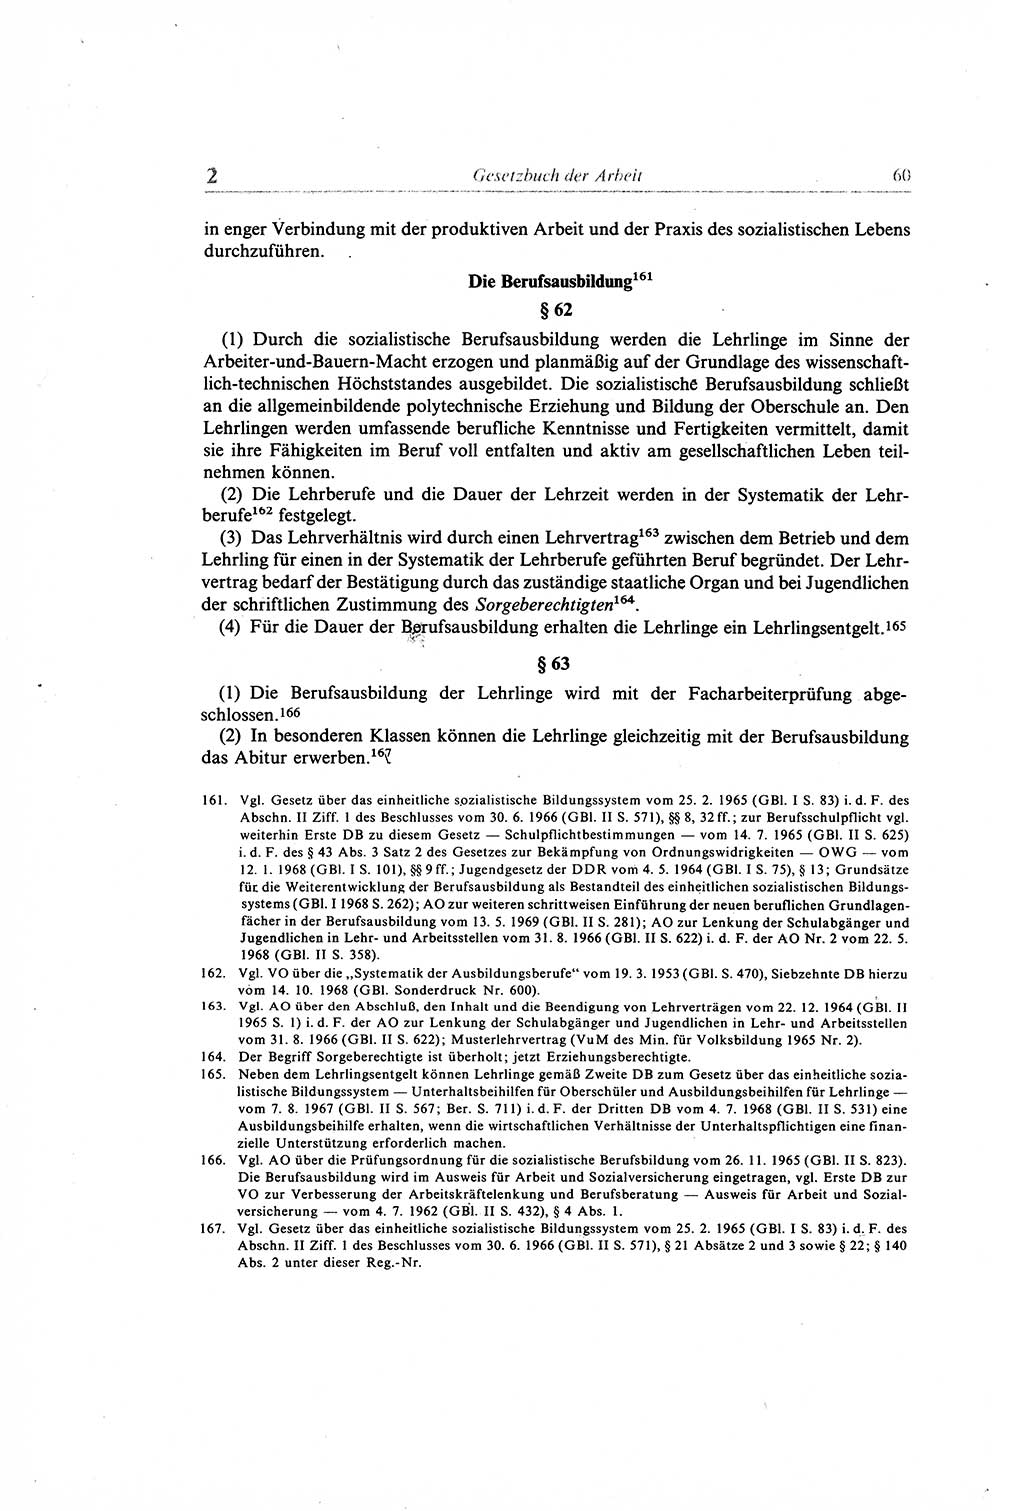 Gesetzbuch der Arbeit (GBA) und andere ausgewählte rechtliche Bestimmungen [Deutsche Demokratische Republik (DDR)] 1968, Seite 60 (GBA DDR 1968, S. 60)